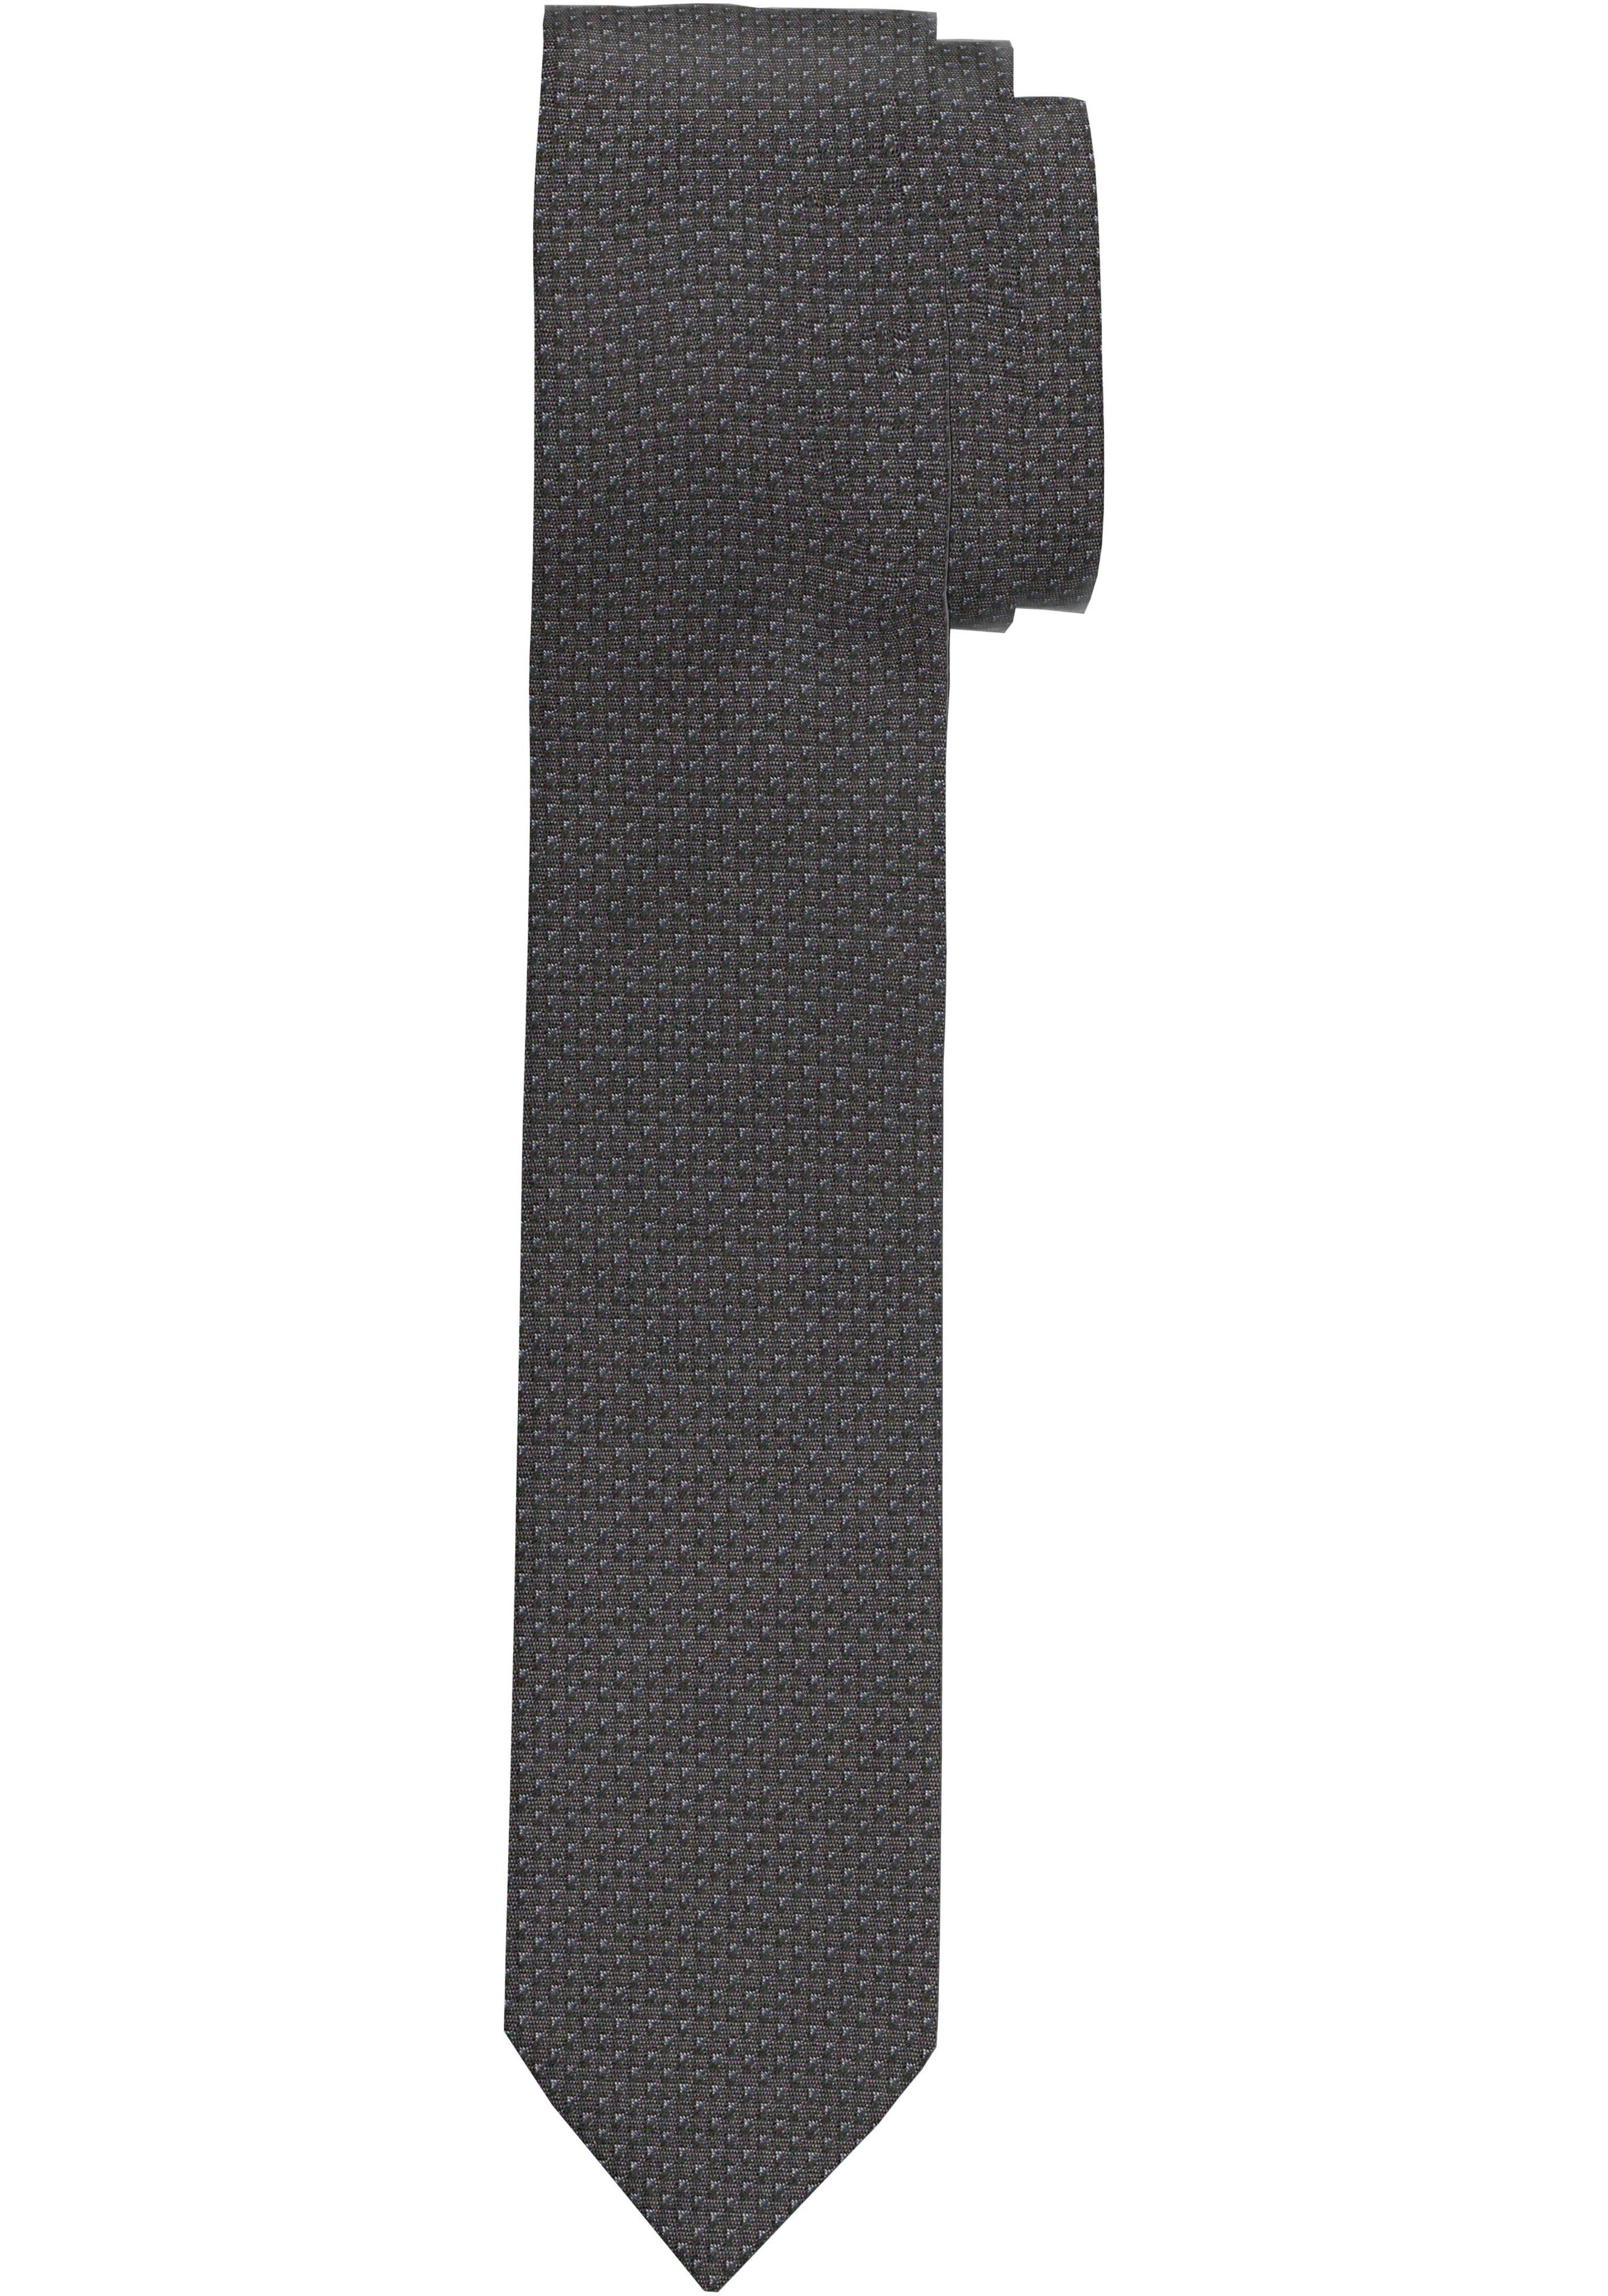 OLYMP Krawatte vielfältige Strukturierte für Krawatte, Anlass jedem zu Kombinationen Perfekt